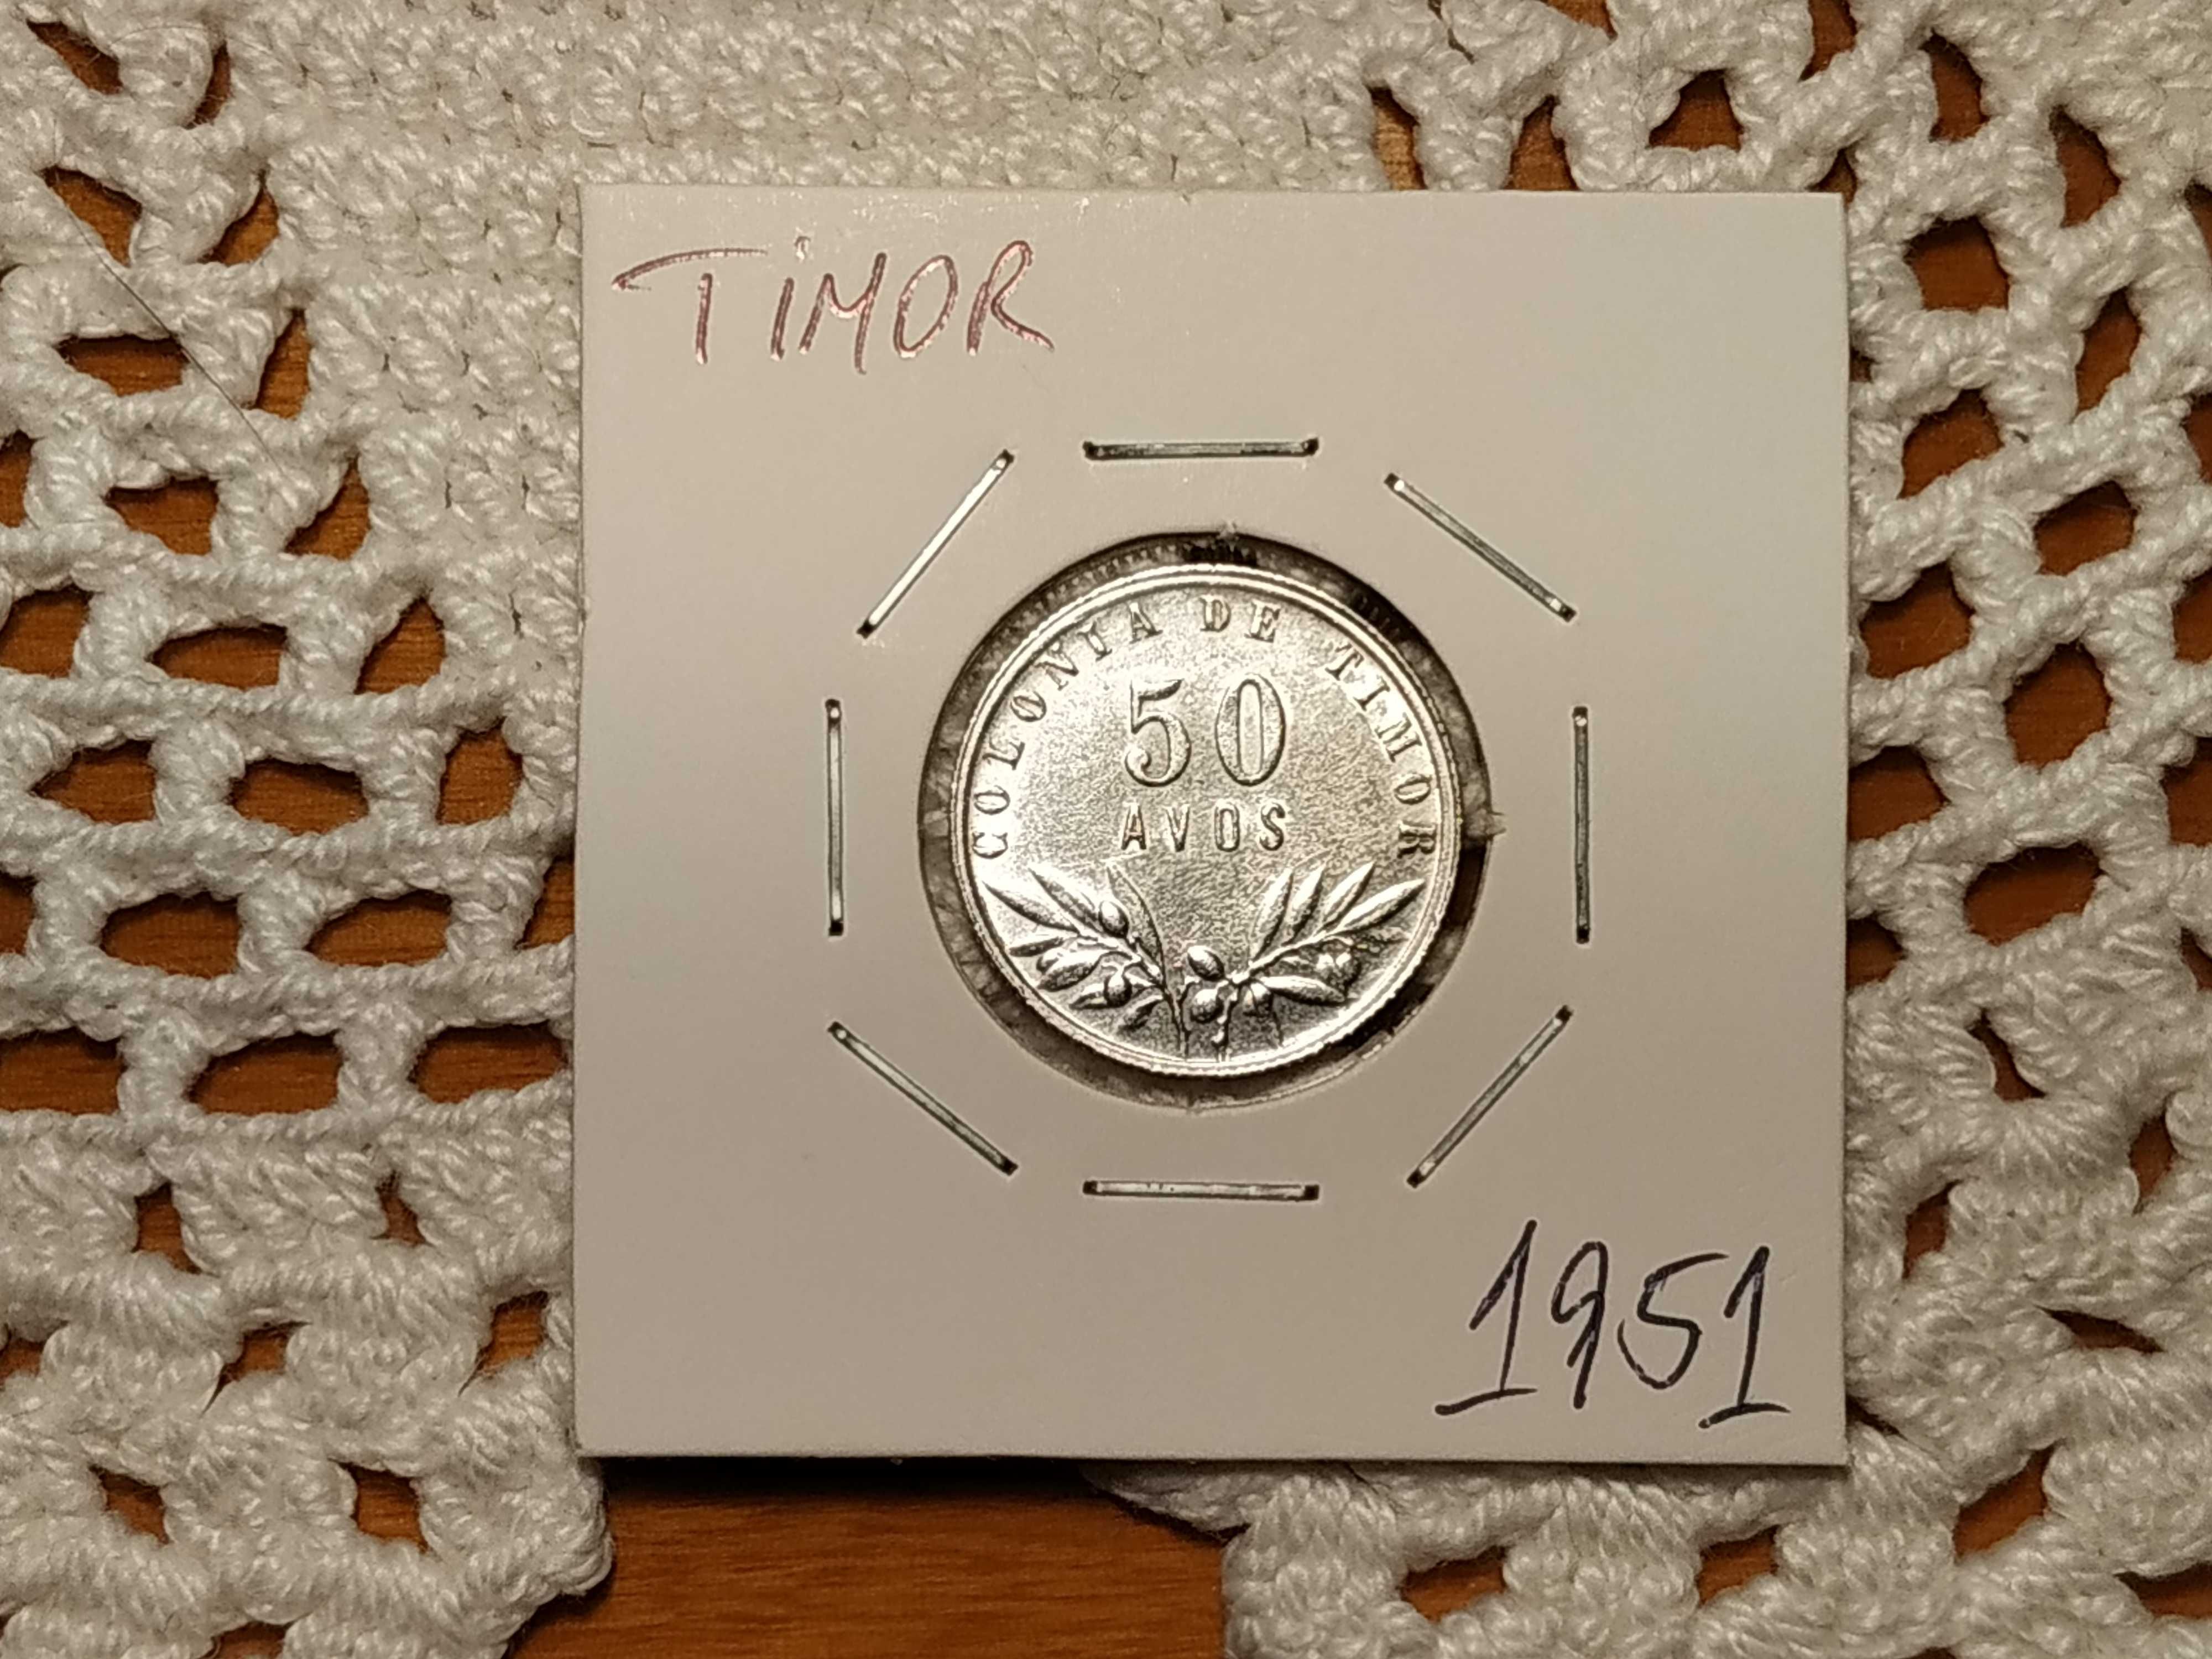 Timor - moeda em prata de 50 avos de 1951